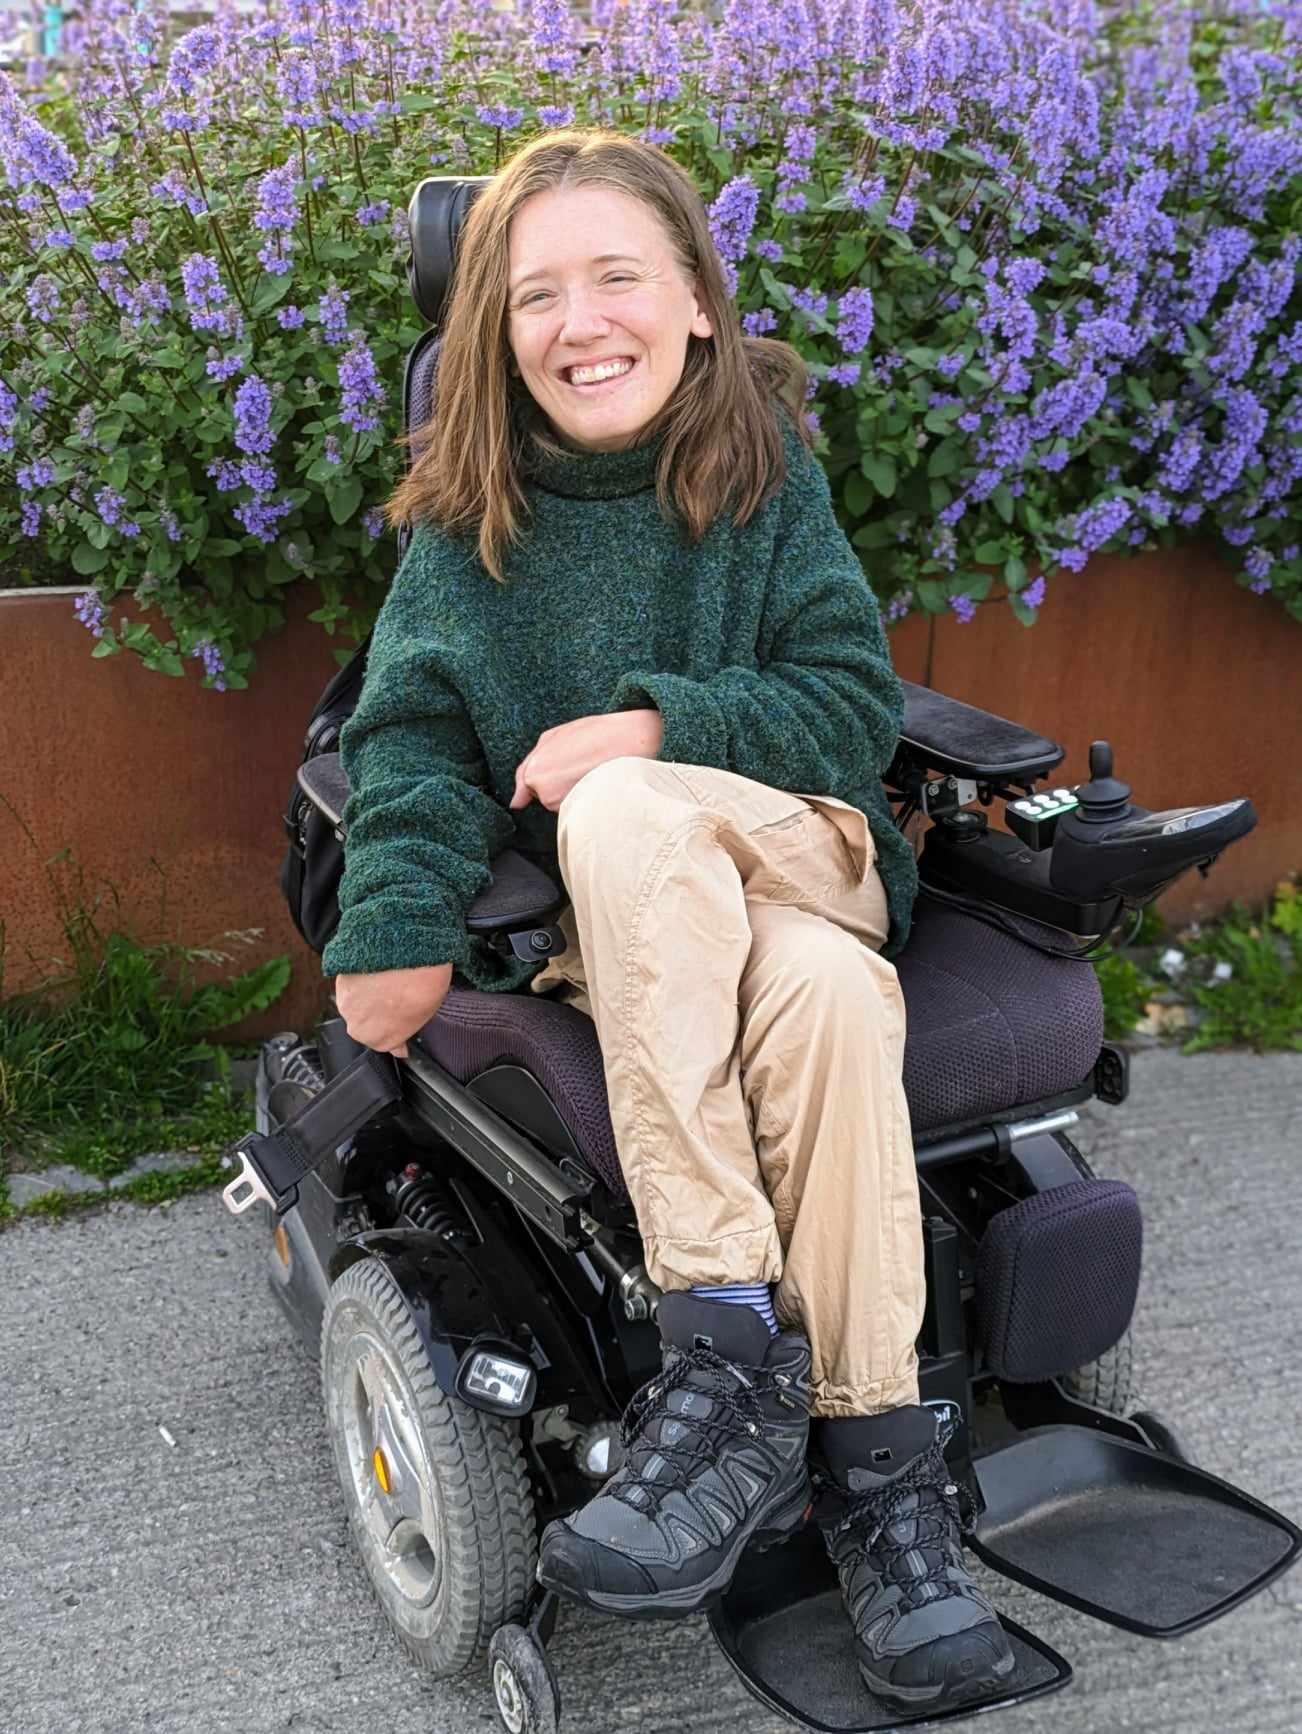 Ung kvinne i rullestol smiler mot kameraet, med lilla blomar i bakgrunnen.